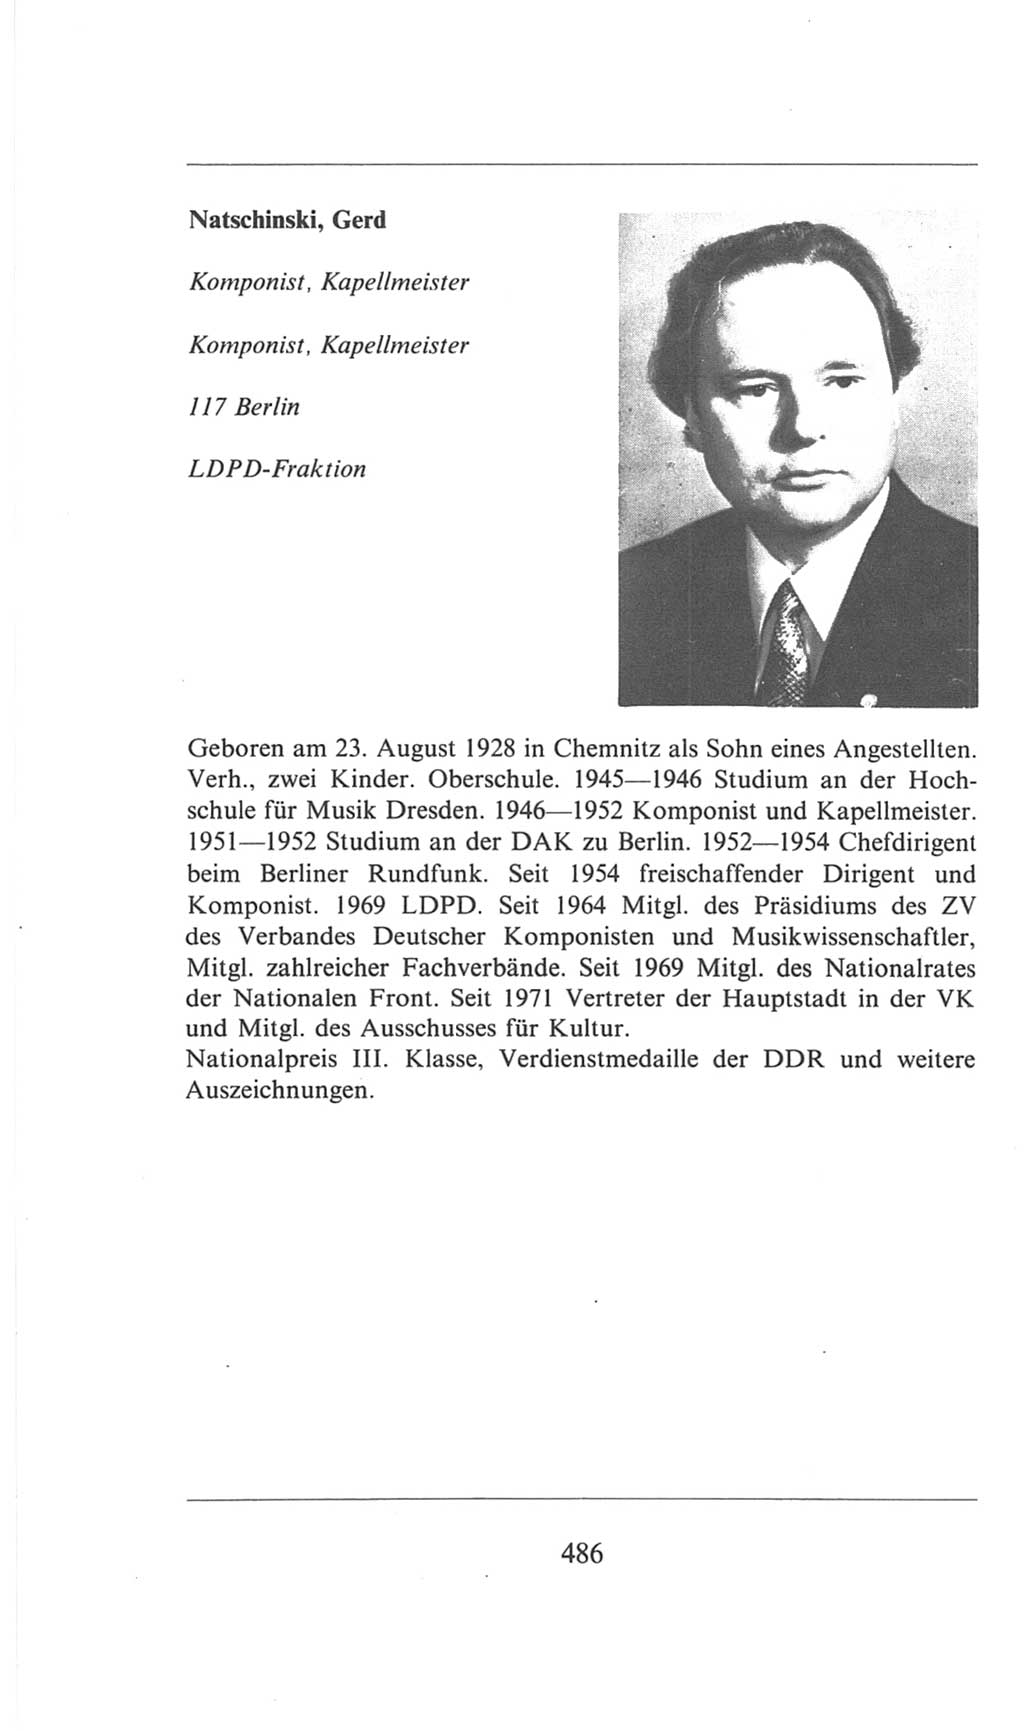 Volkskammer (VK) der Deutschen Demokratischen Republik (DDR), 6. Wahlperiode 1971-1976, Seite 486 (VK. DDR 6. WP. 1971-1976, S. 486)